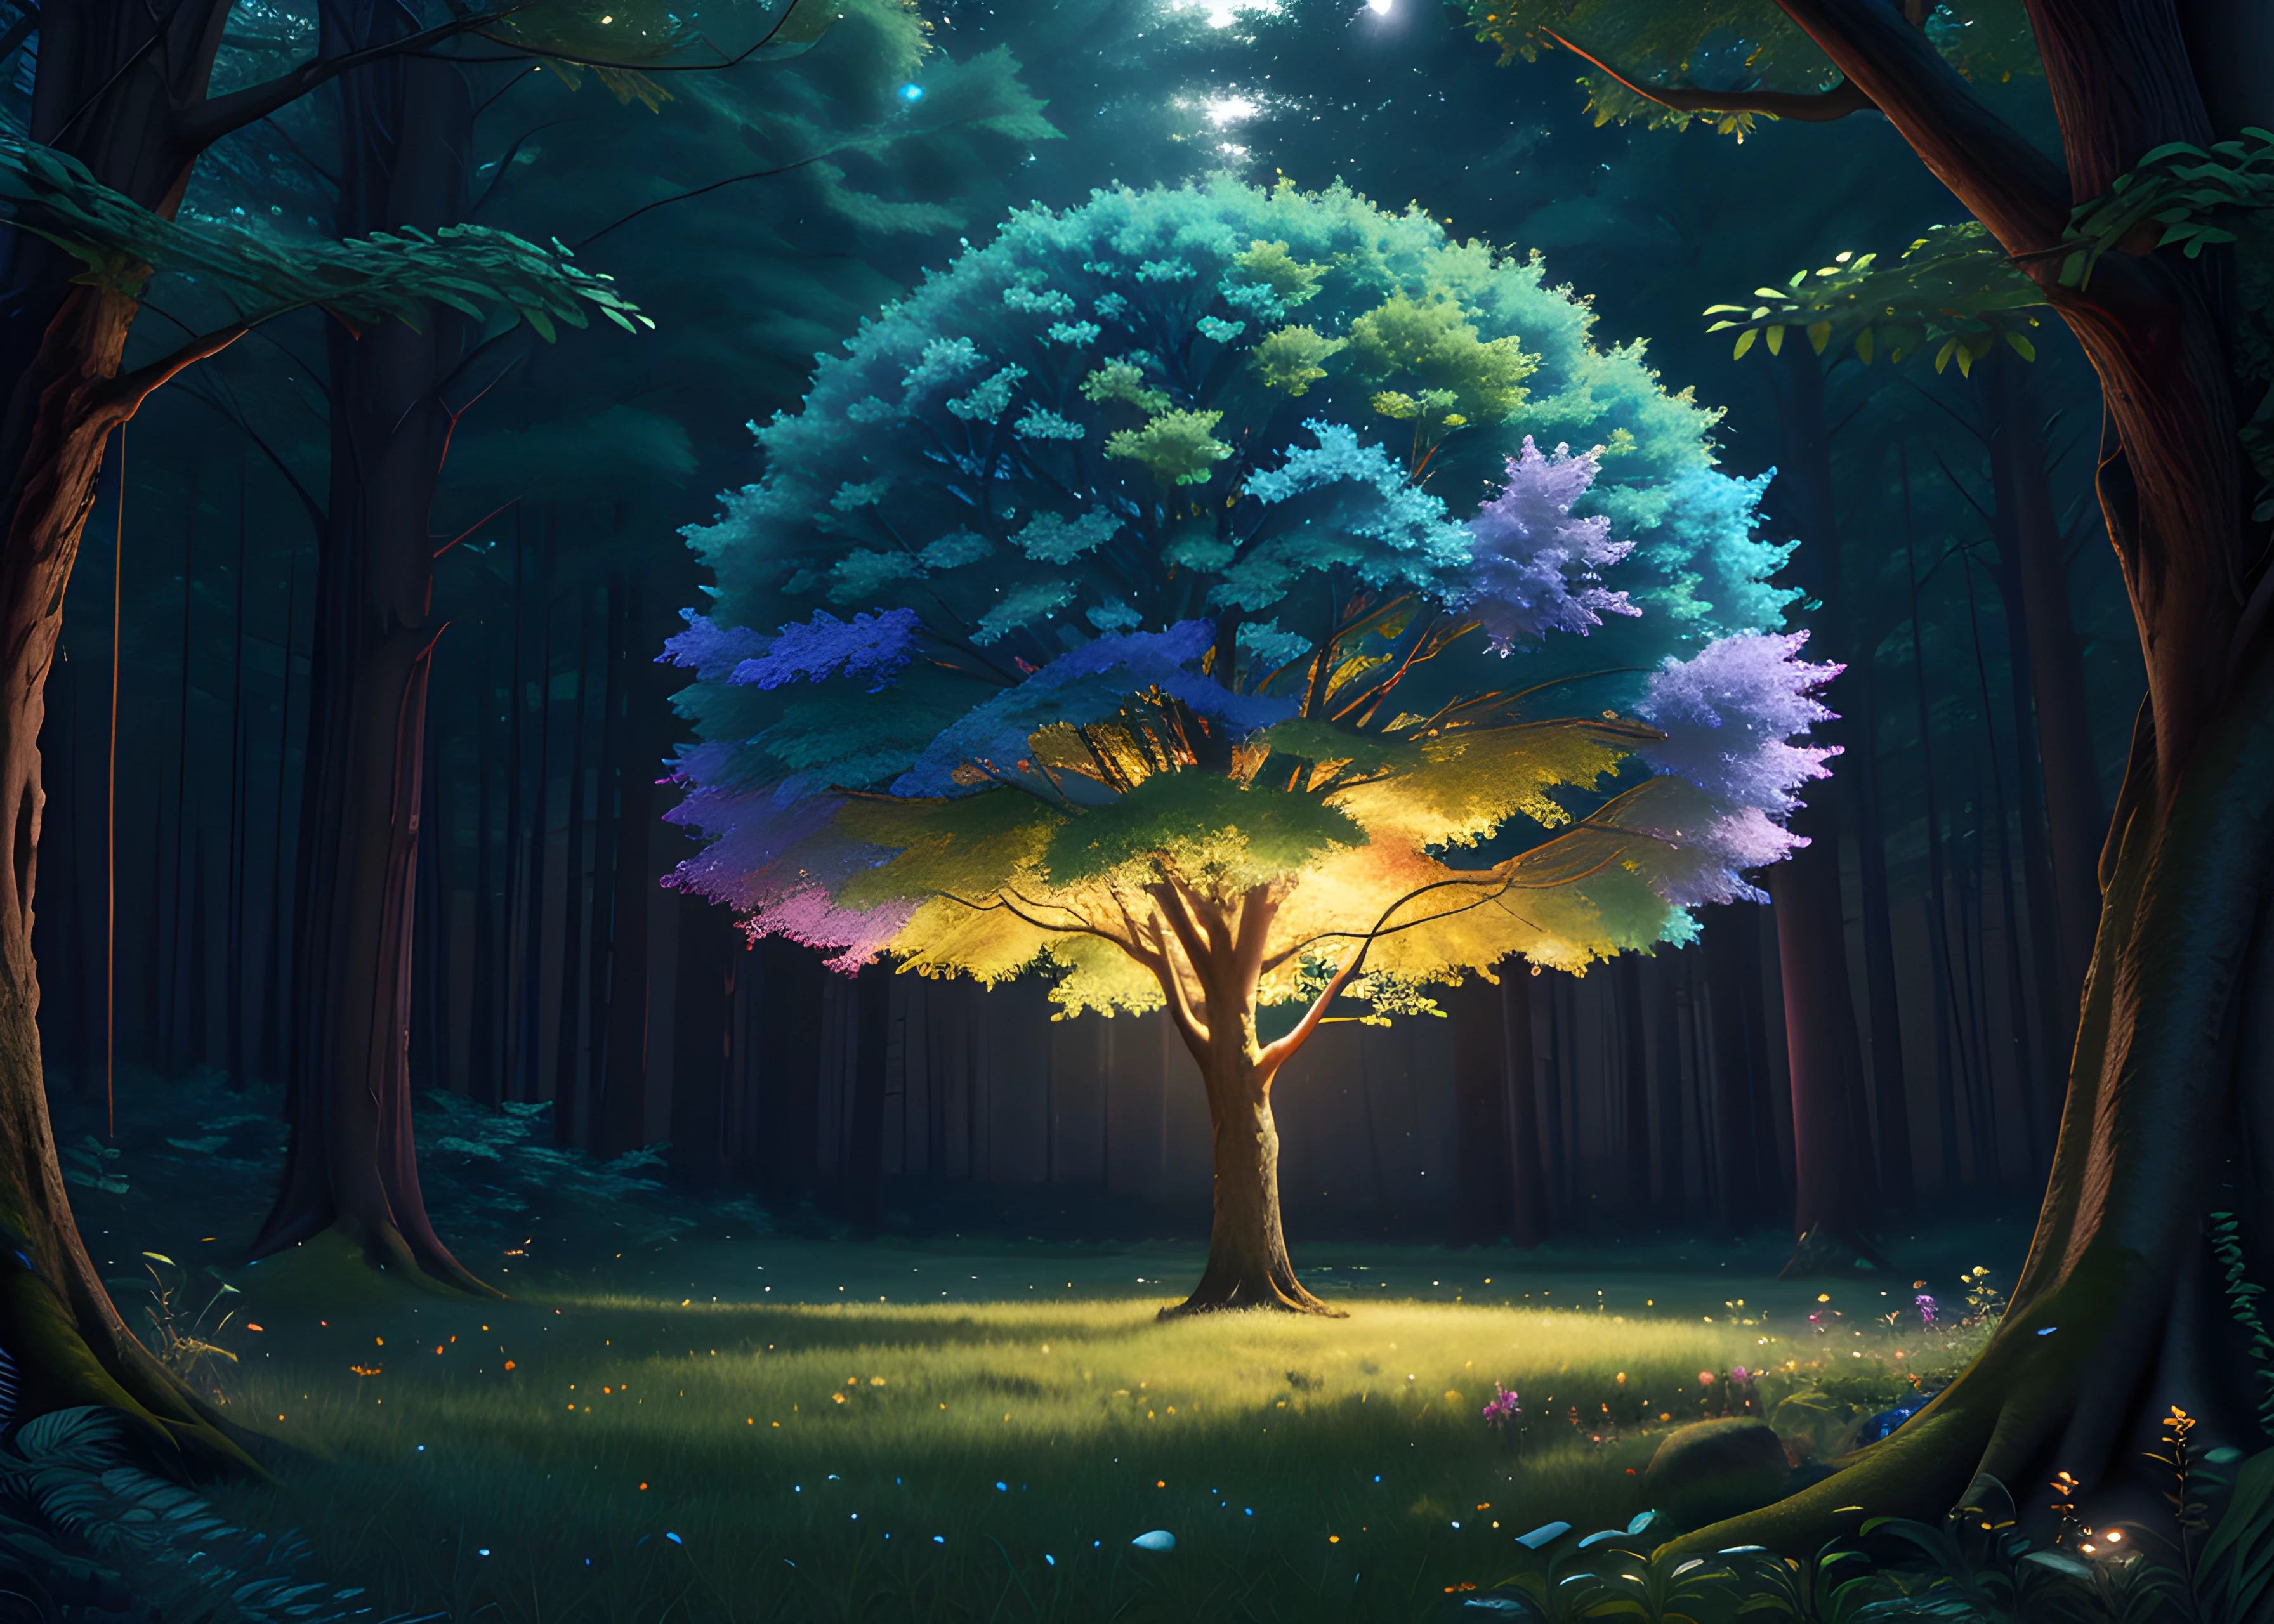 شجرة, تقليم الضوء, مفصلة للغاية 8K, تظليل, (تقليل الضوضاء:0.6), دقة عالية, تحفة, 1 فتى, 8 ك, الملونة مجردة قوس قزح العاطفة, رائع, مفصلة للغاية, استوديو جيبلي, إضاءة جانبية, في وسط غابة ضبابية في الليل